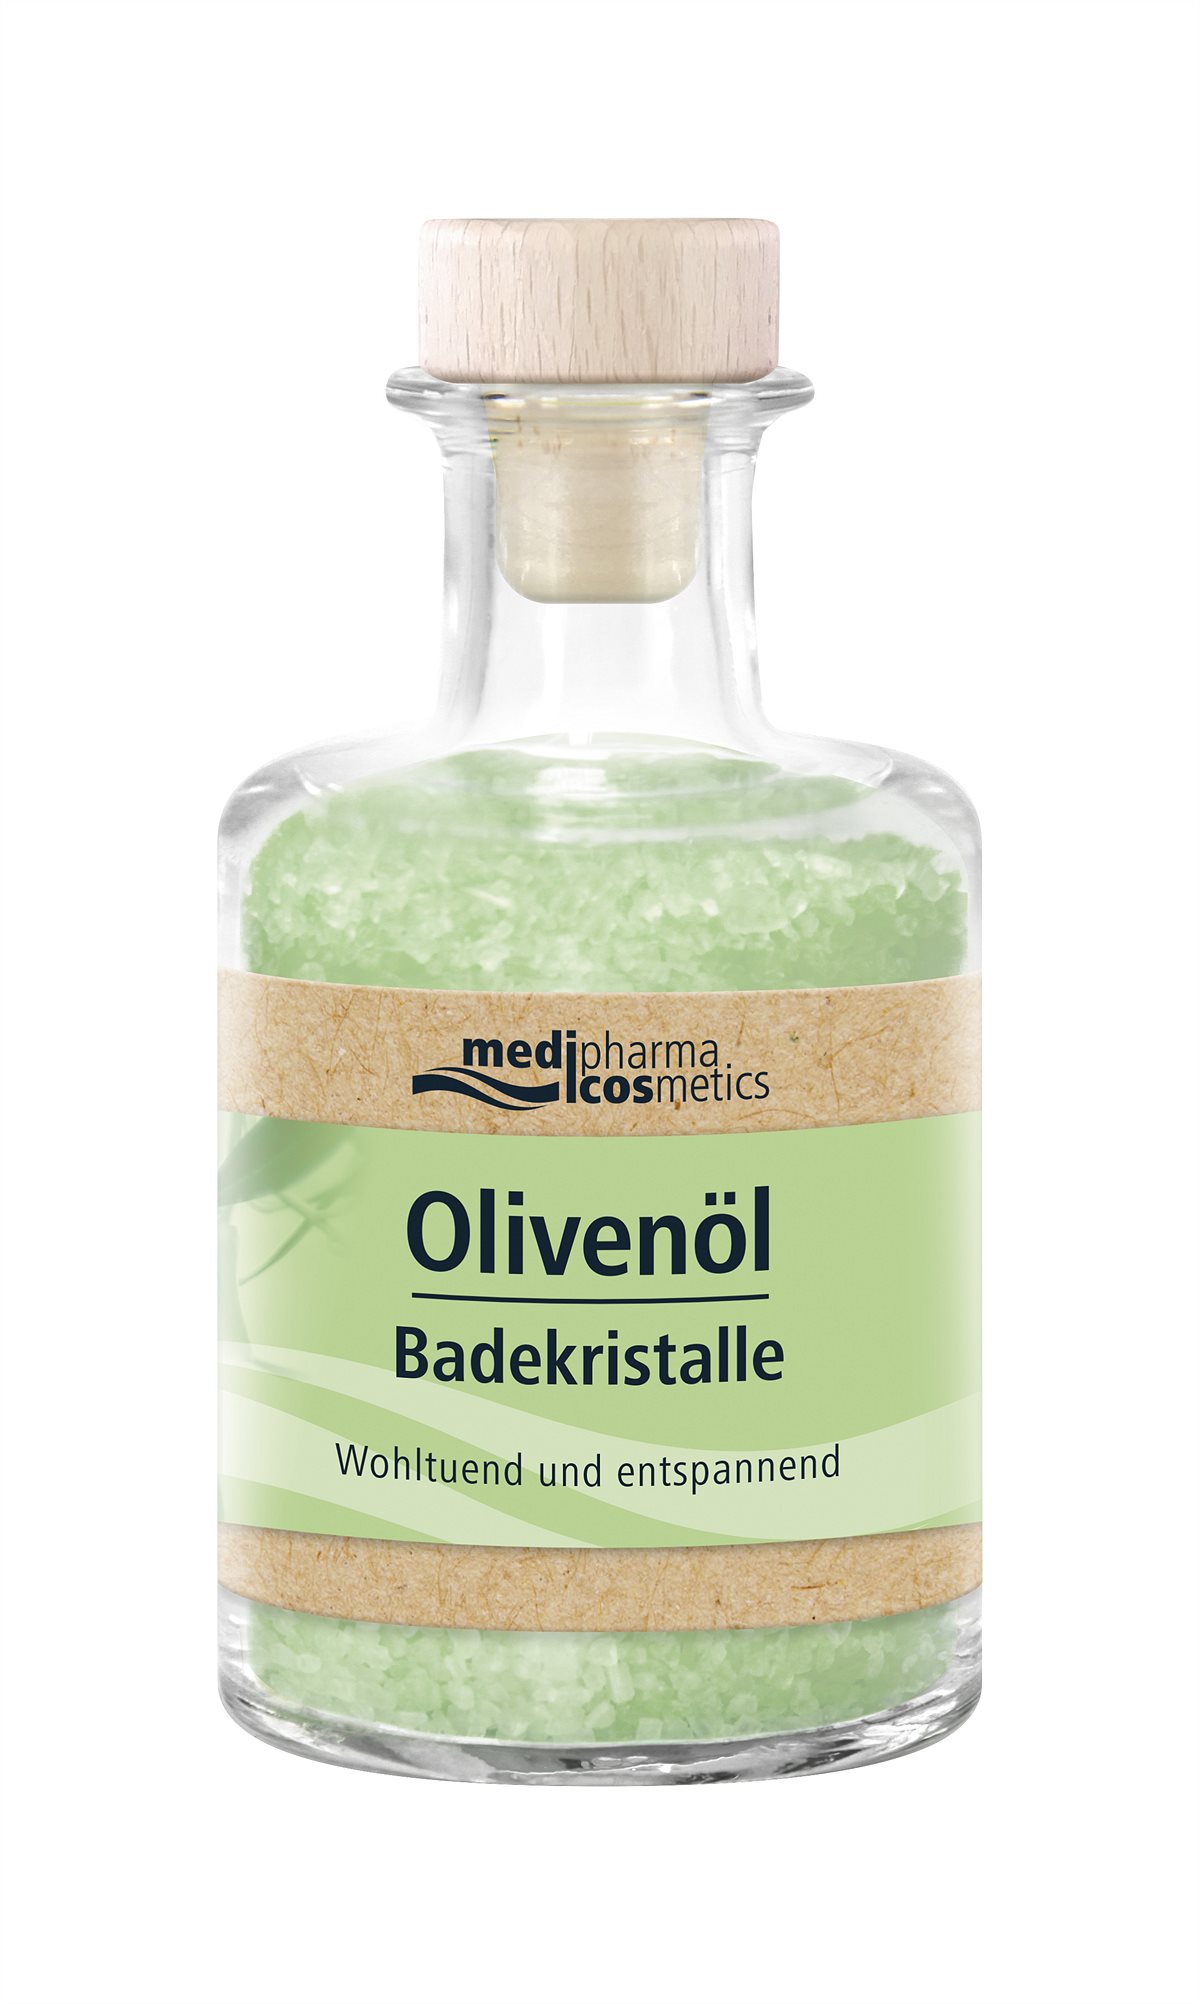 medipharma-cosmetics-Olivenoel-Badekristalle